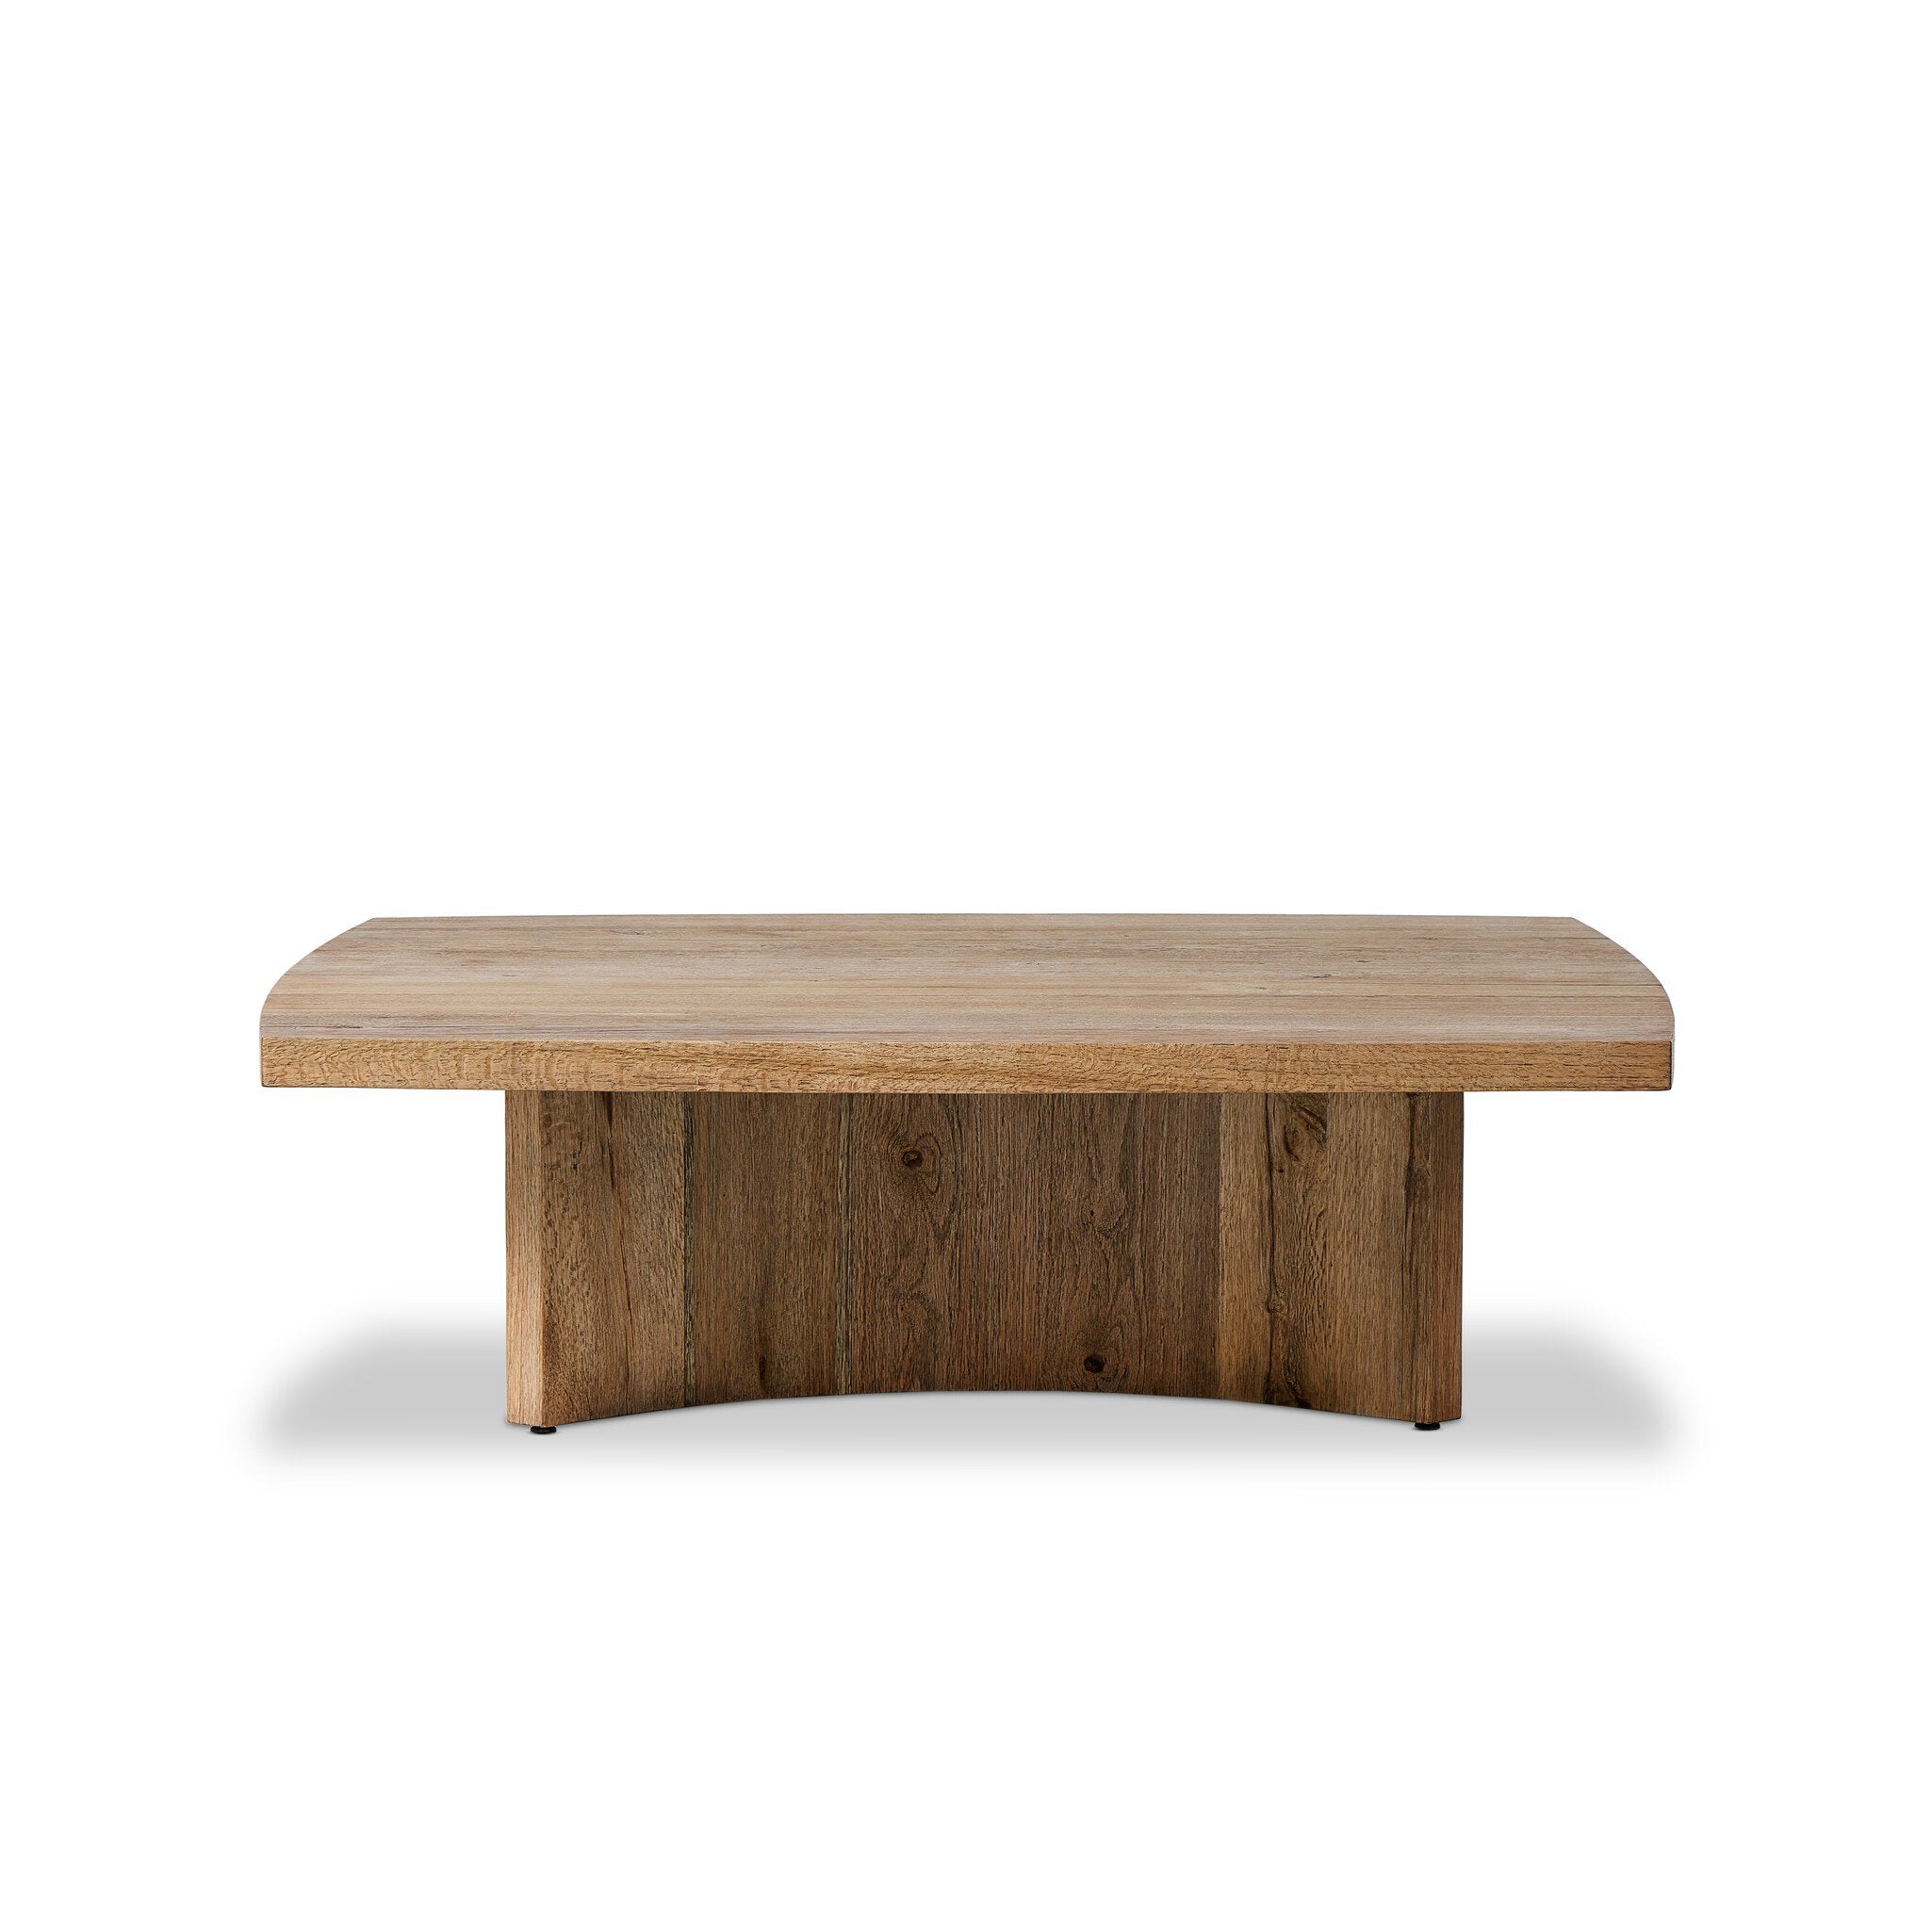 Brinton Square Coffee Table - Rustic Oak Veneer